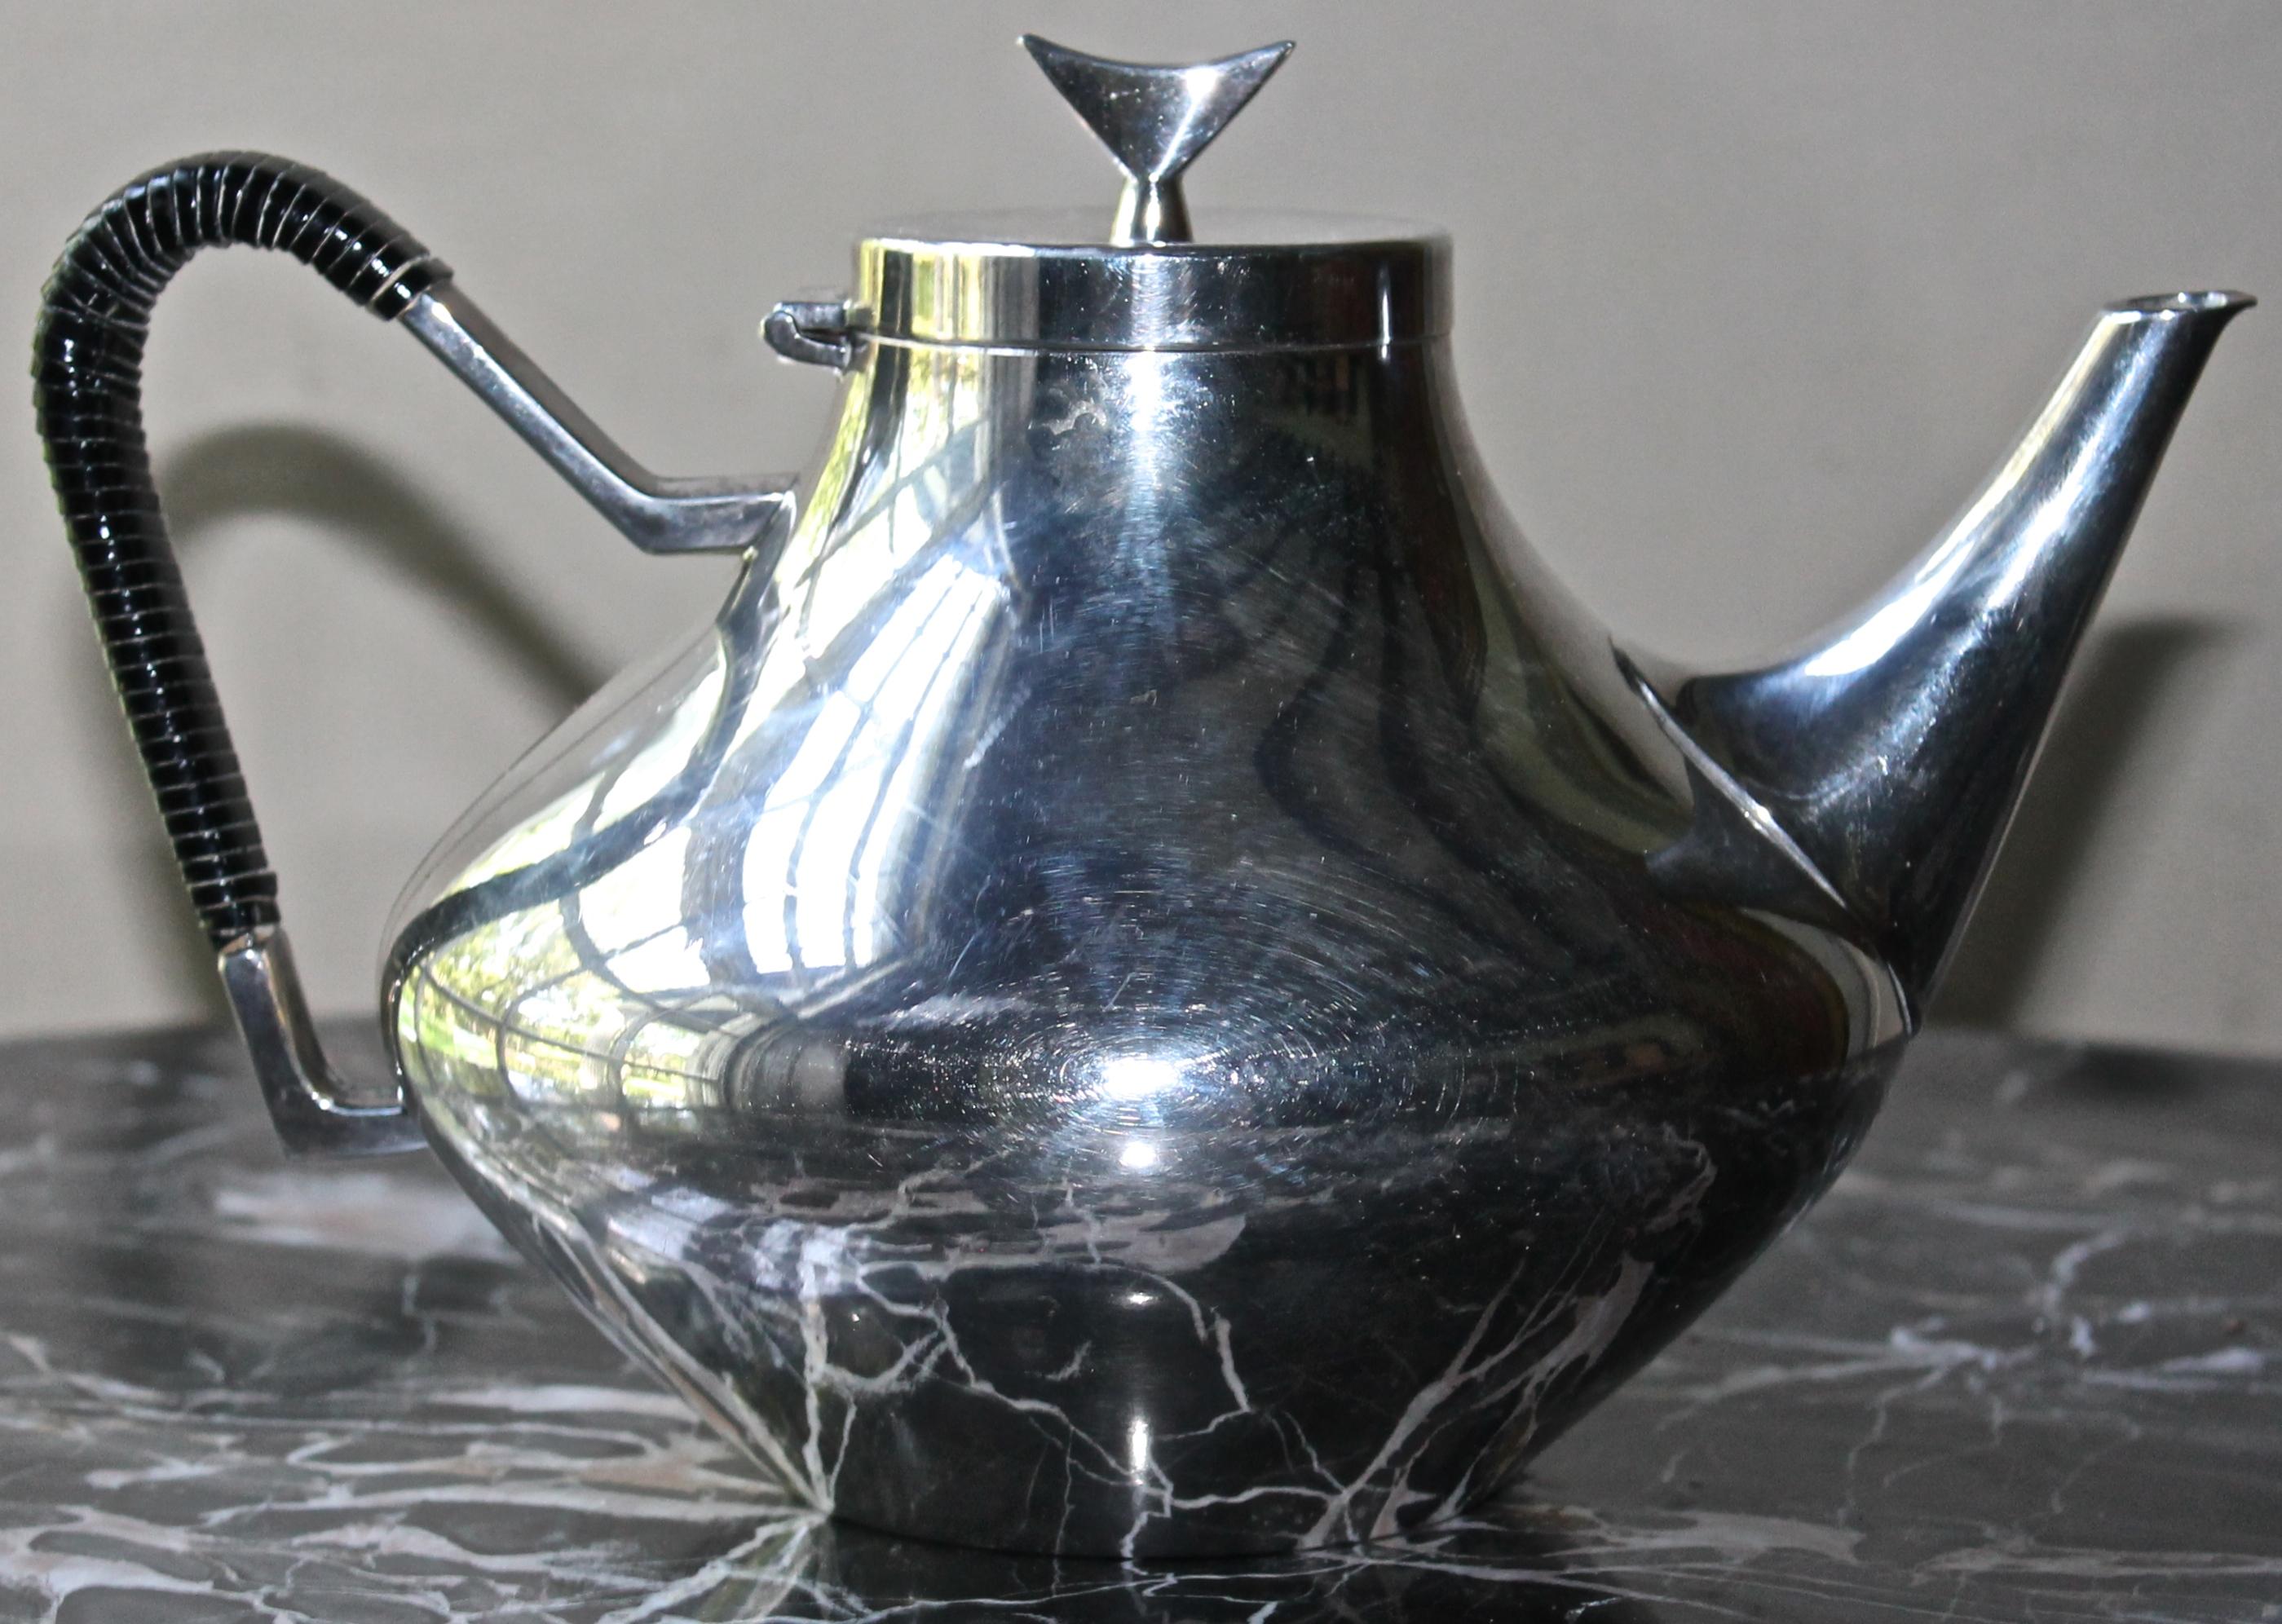 Elegant classic mid century American tea oot in Scandinavian style.